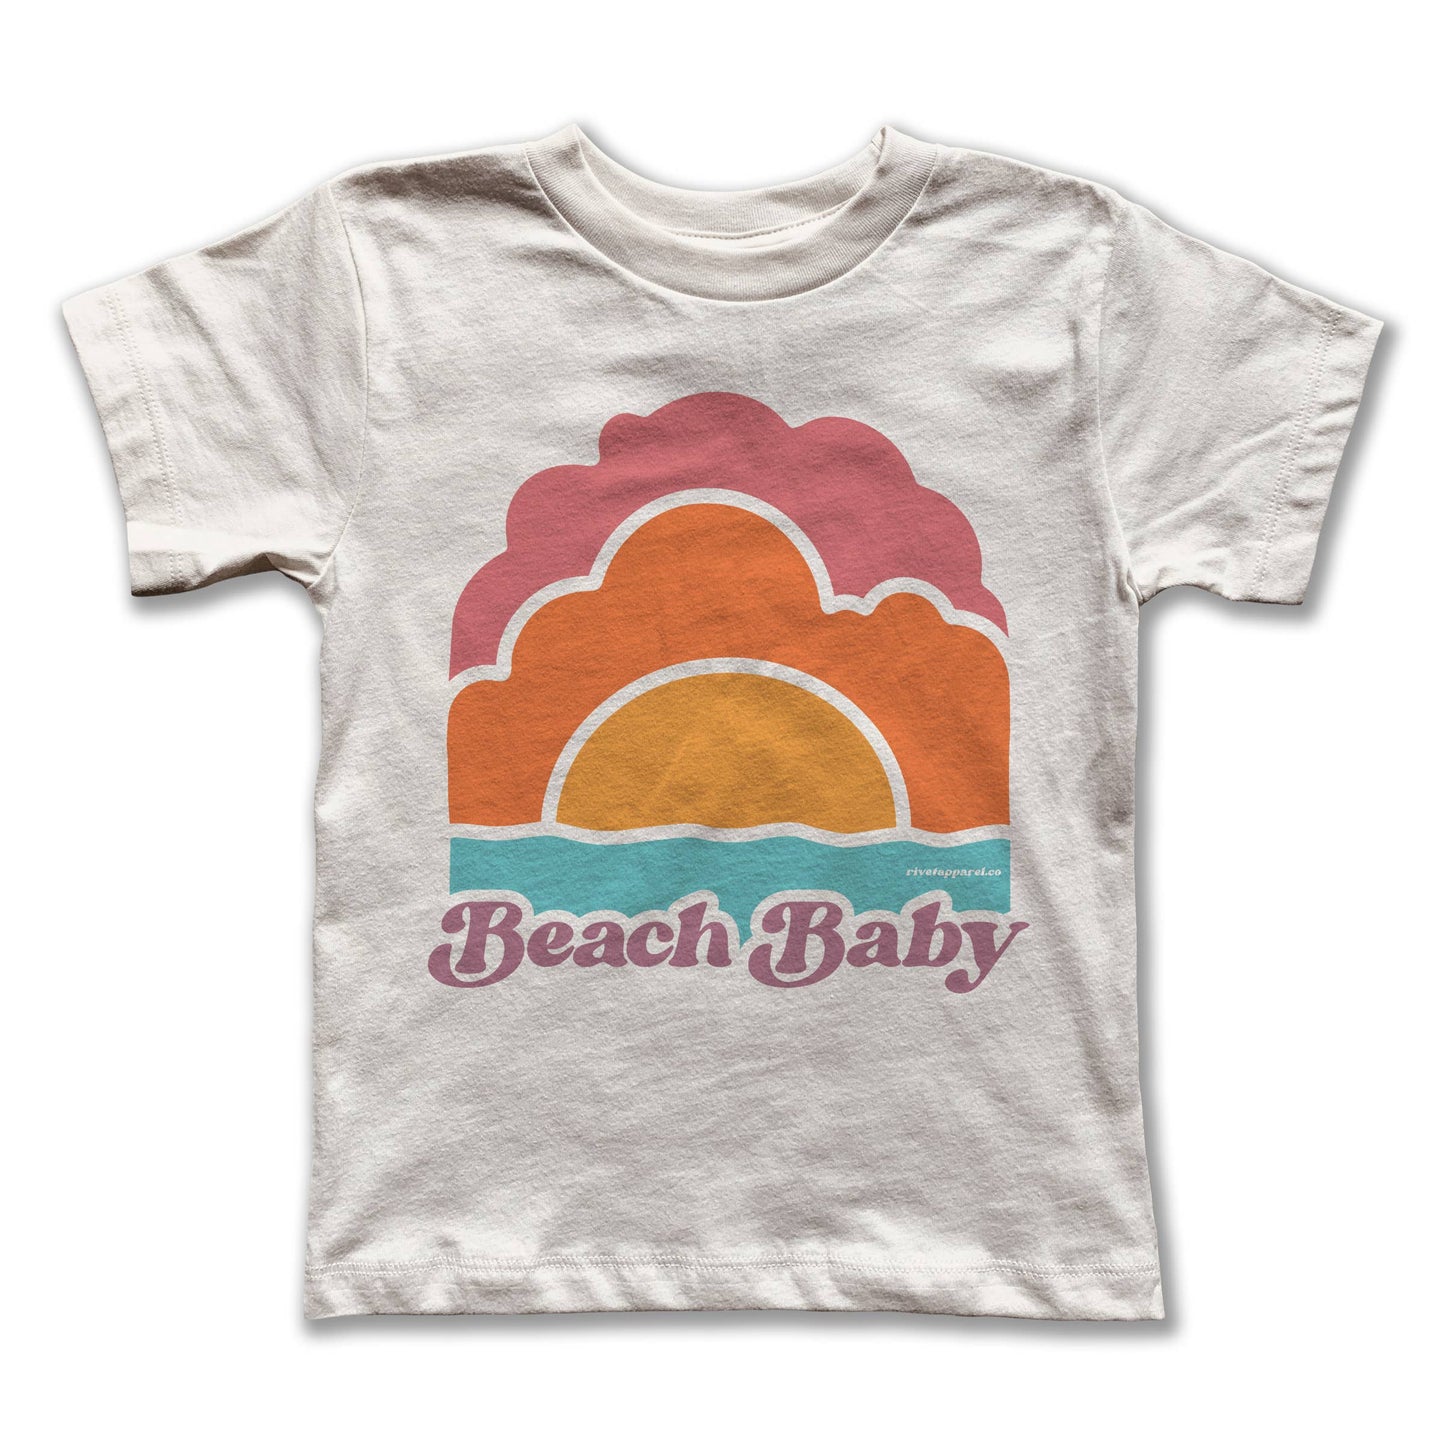 Tee (Kids) - Beach Baby